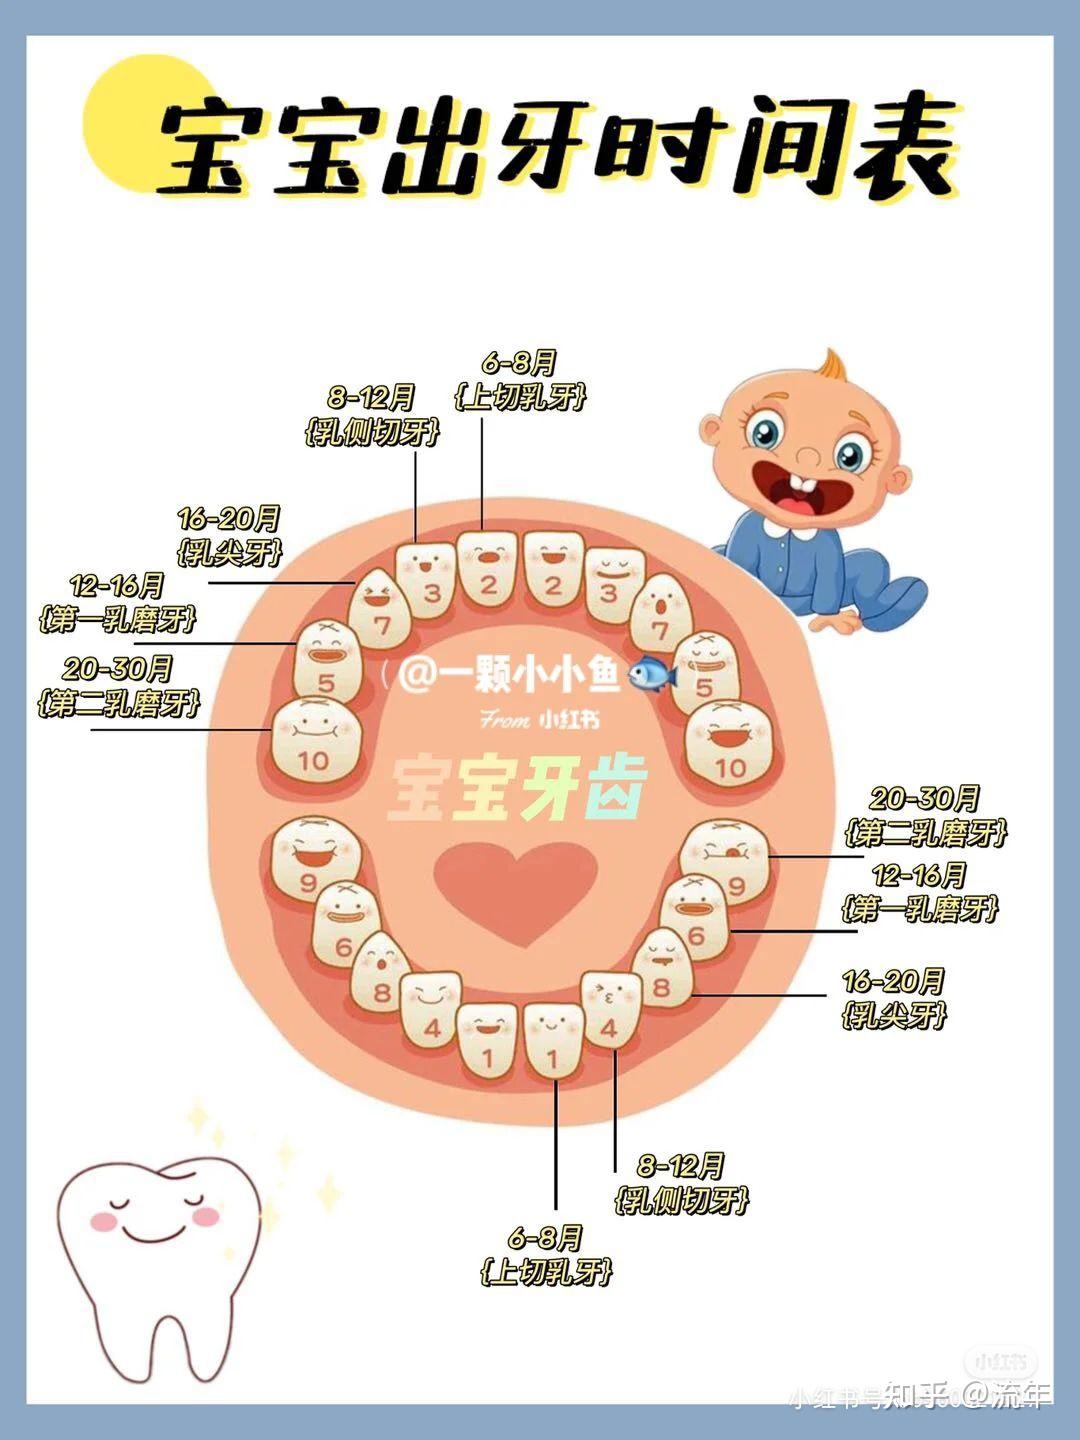 宝宝出牙晚是因为缺钙吗?